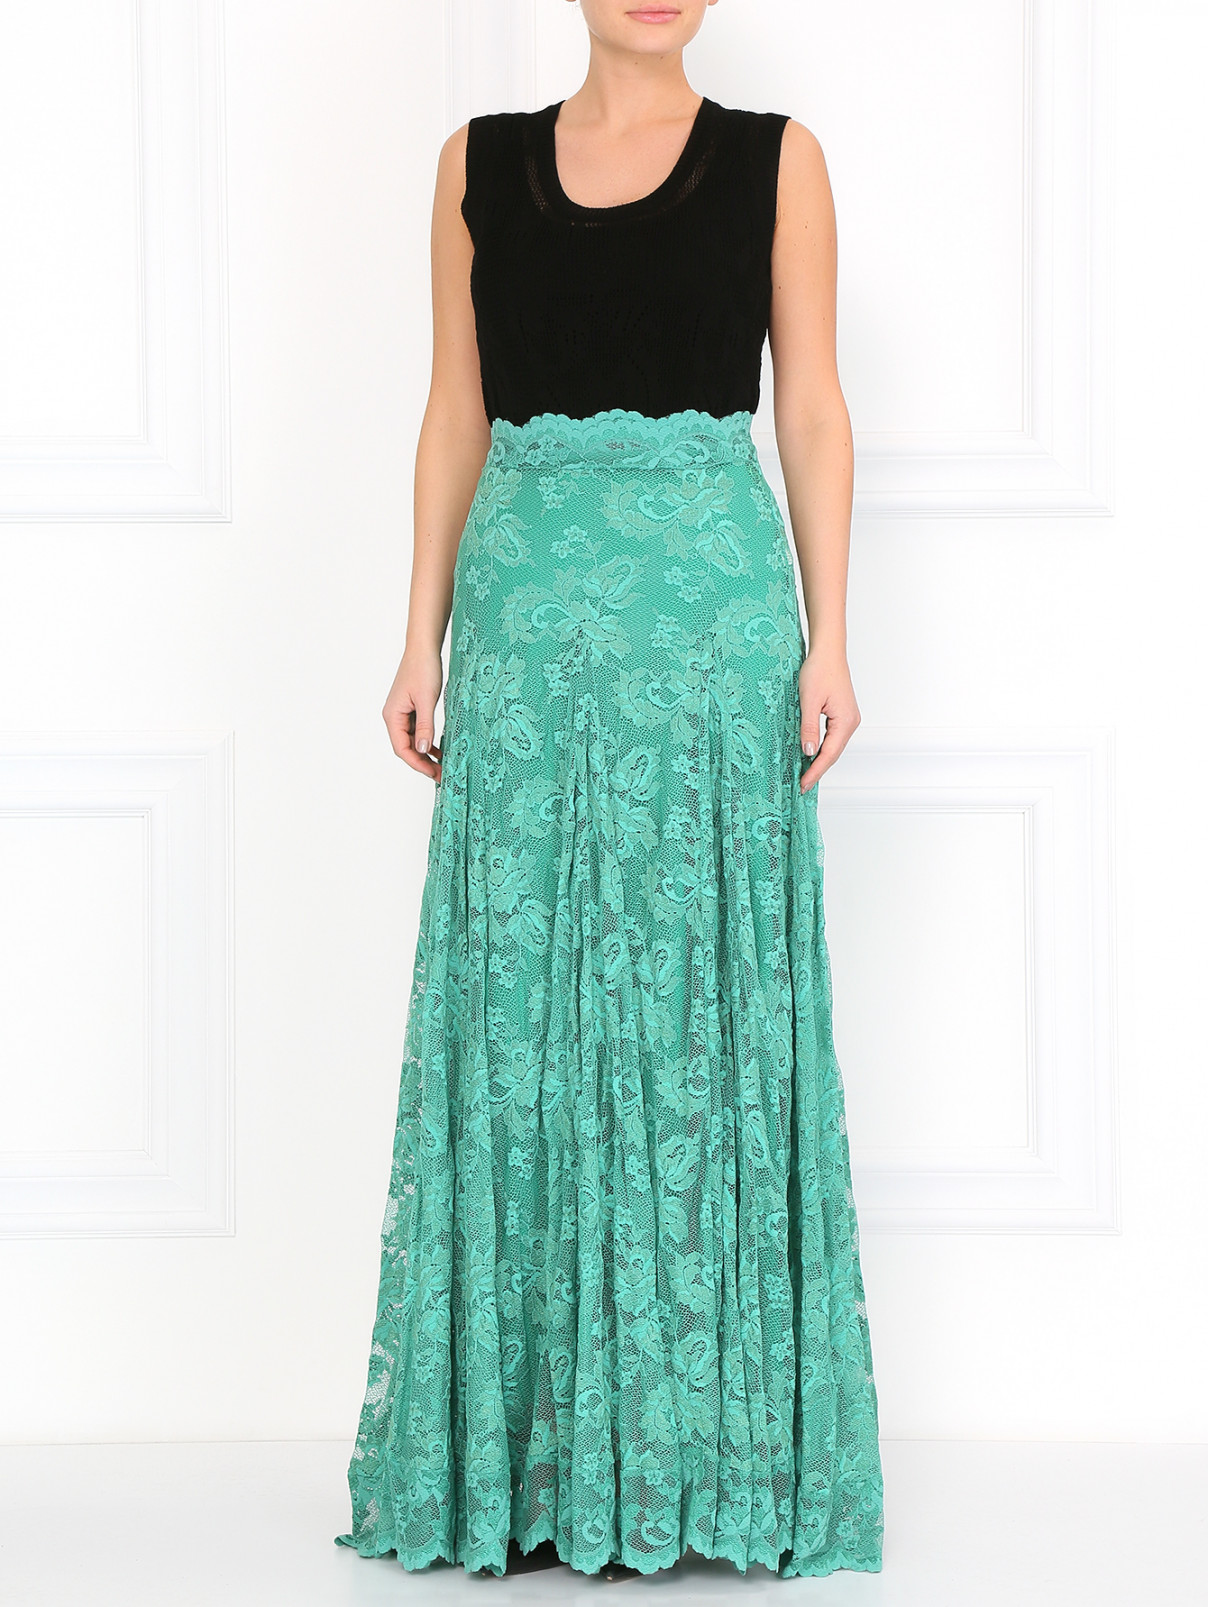 Кружевная юбка-макси Olvi's  –  Модель Общий вид  – Цвет:  Зеленый